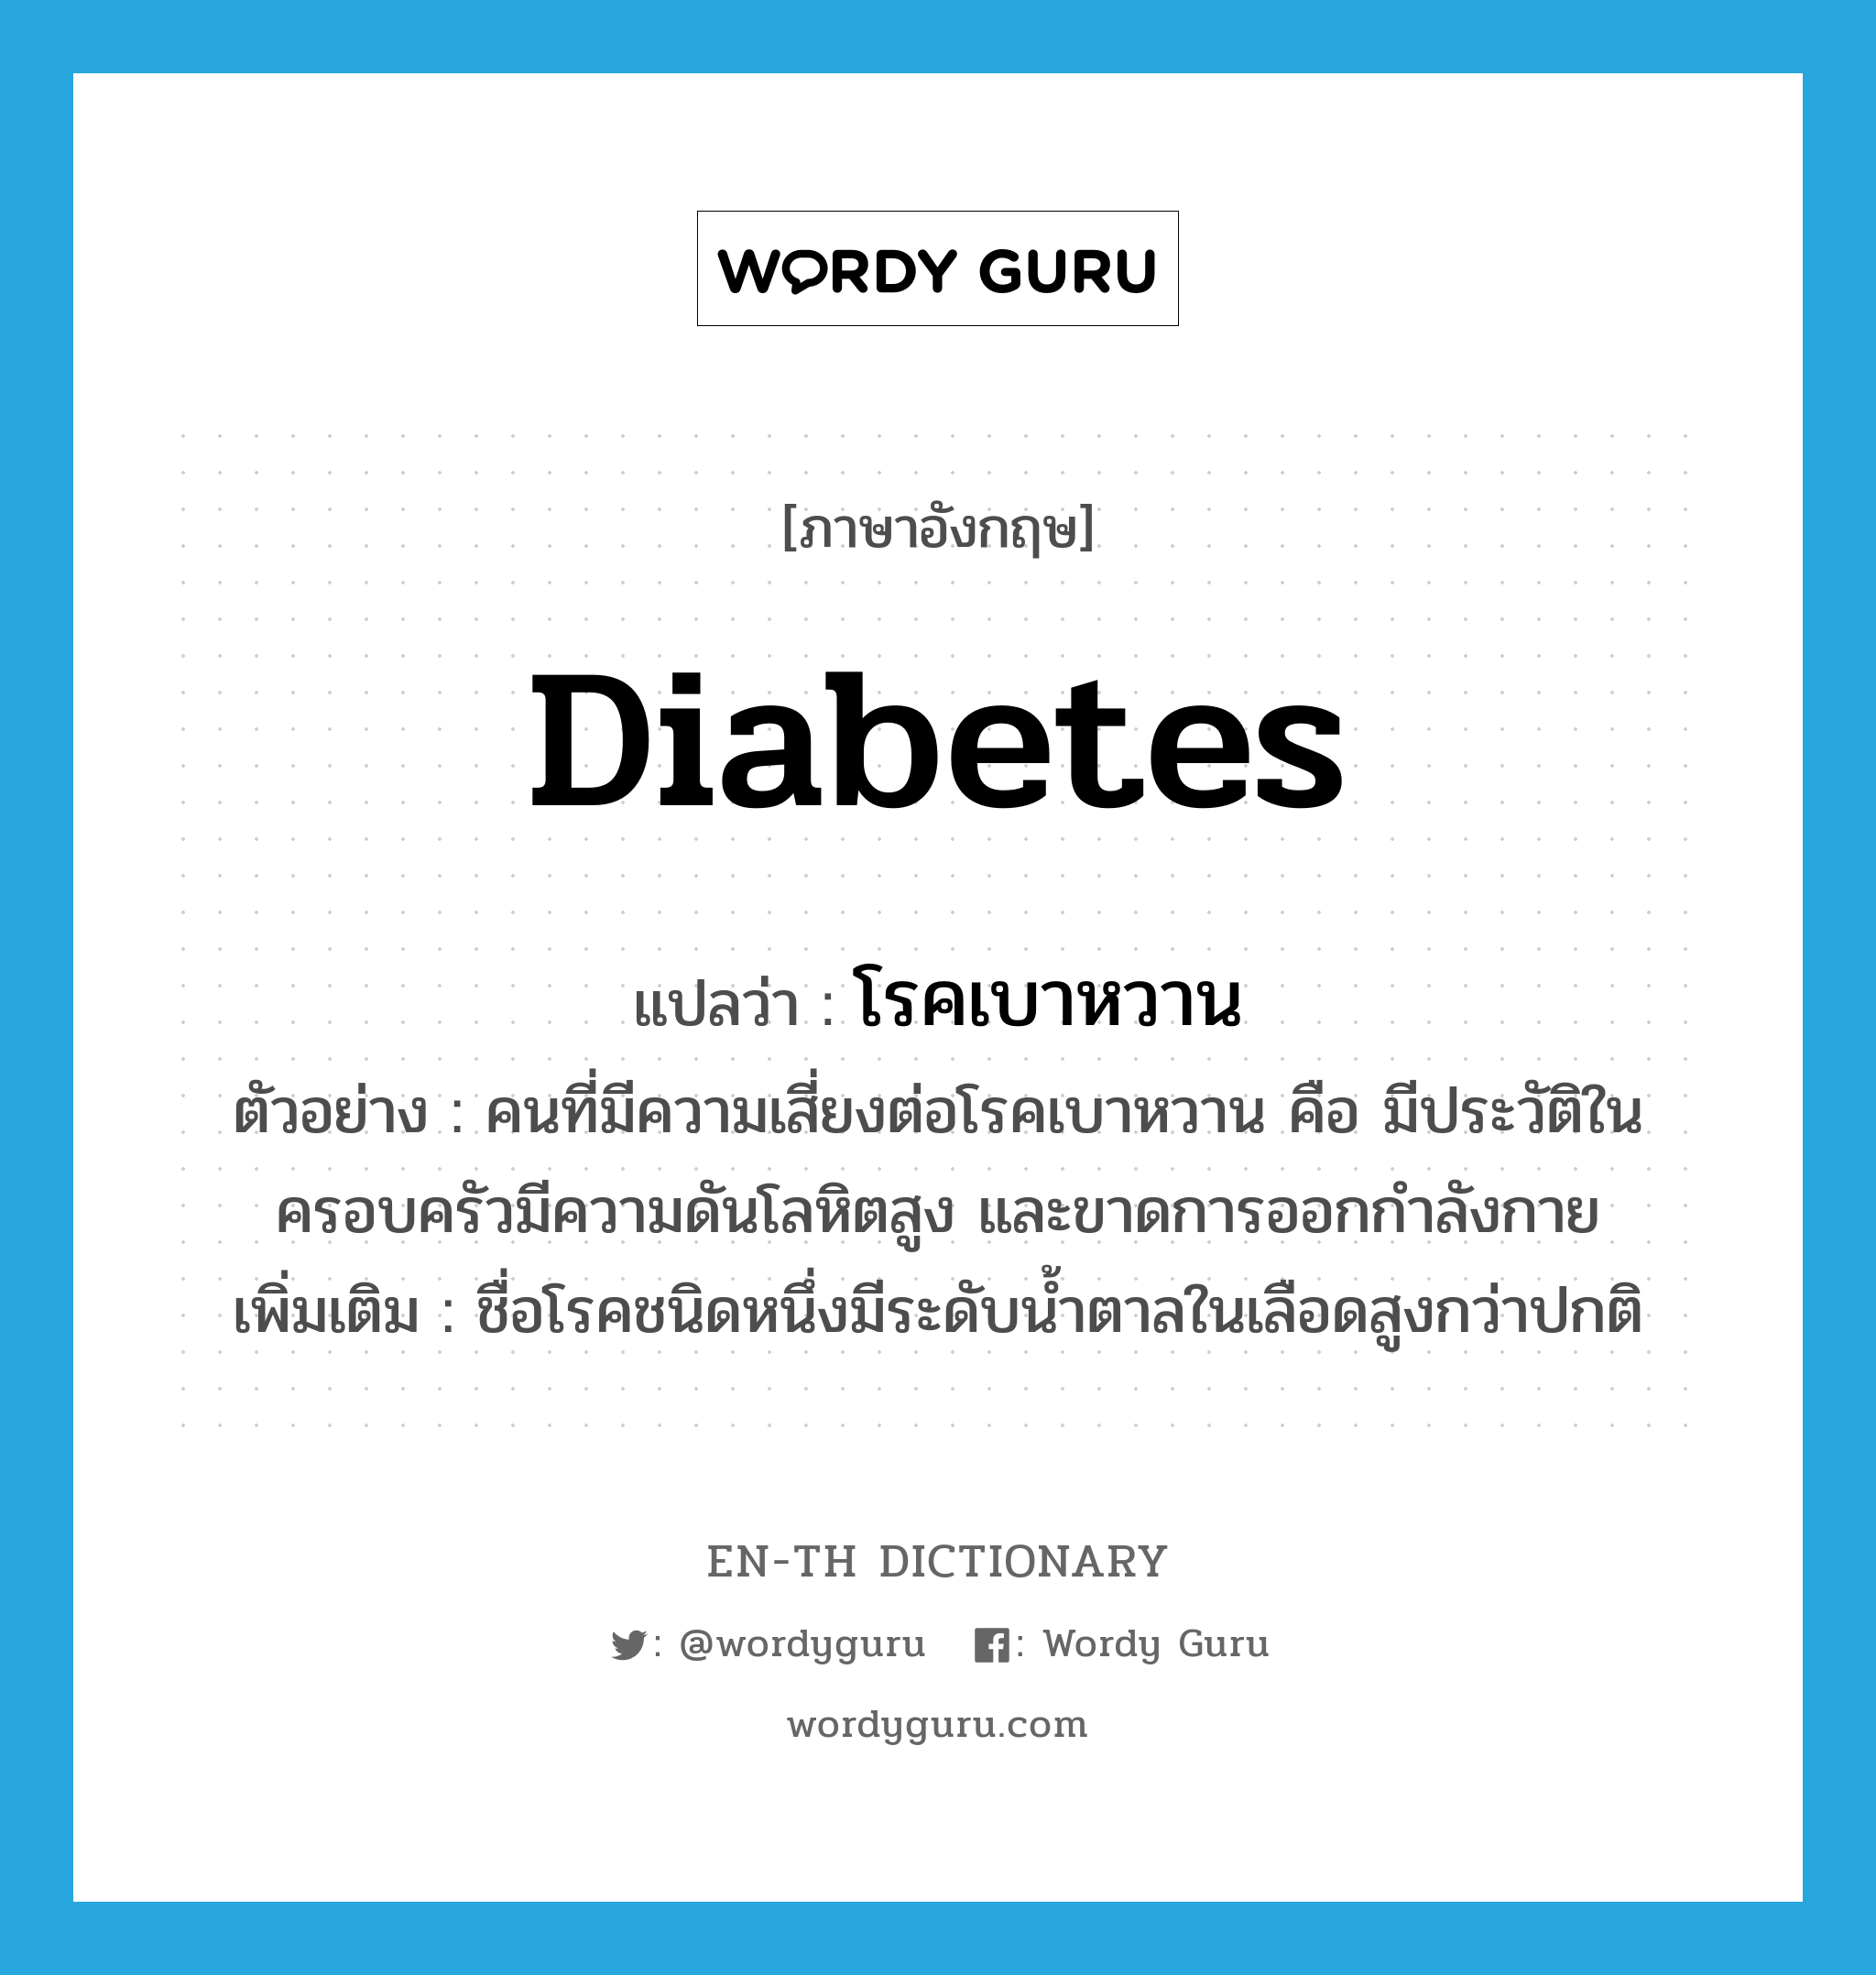 diabetes แปลว่า?, คำศัพท์ภาษาอังกฤษ diabetes แปลว่า โรคเบาหวาน ประเภท N ตัวอย่าง คนที่มีความเสี่ยงต่อโรคเบาหวาน คือ มีประวัติในครอบครัวมีความดันโลหิตสูง และขาดการออกกำลังกาย เพิ่มเติม ชื่อโรคชนิดหนึ่งมีระดับน้ำตาลในเลือดสูงกว่าปกติ หมวด N